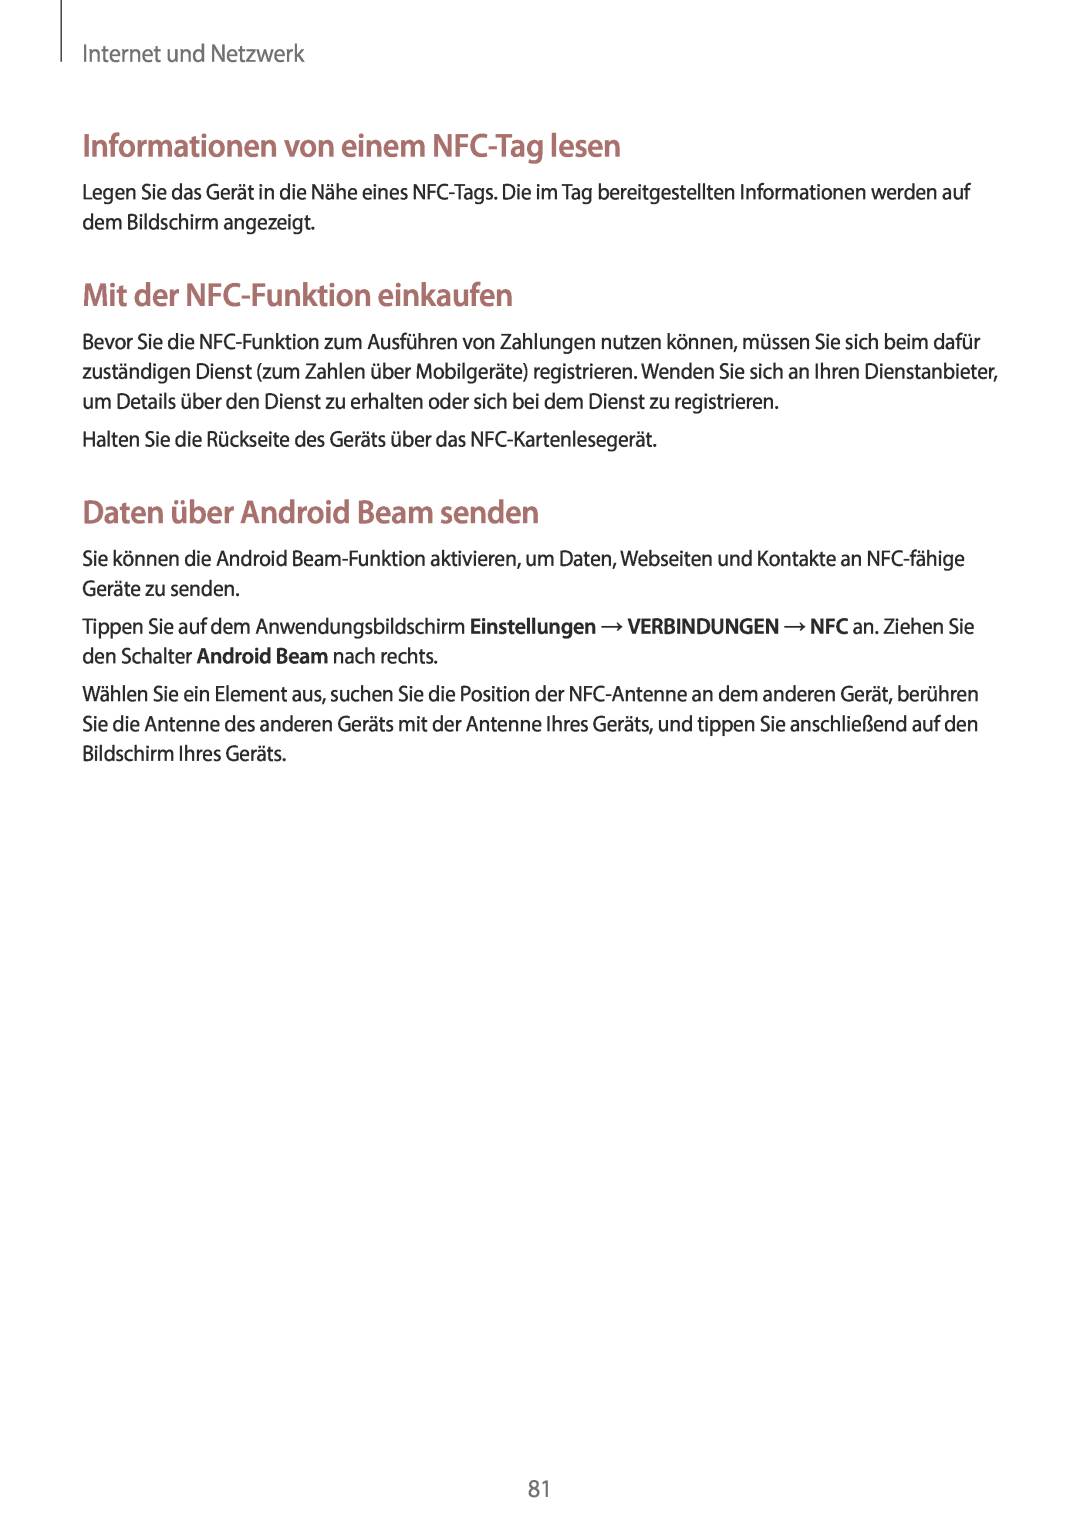 Samsung SM-N9005ZKETCL manual Informationen von einem NFC-Tag lesen, Mit der NFC-Funktion einkaufen, Internet und Netzwerk 